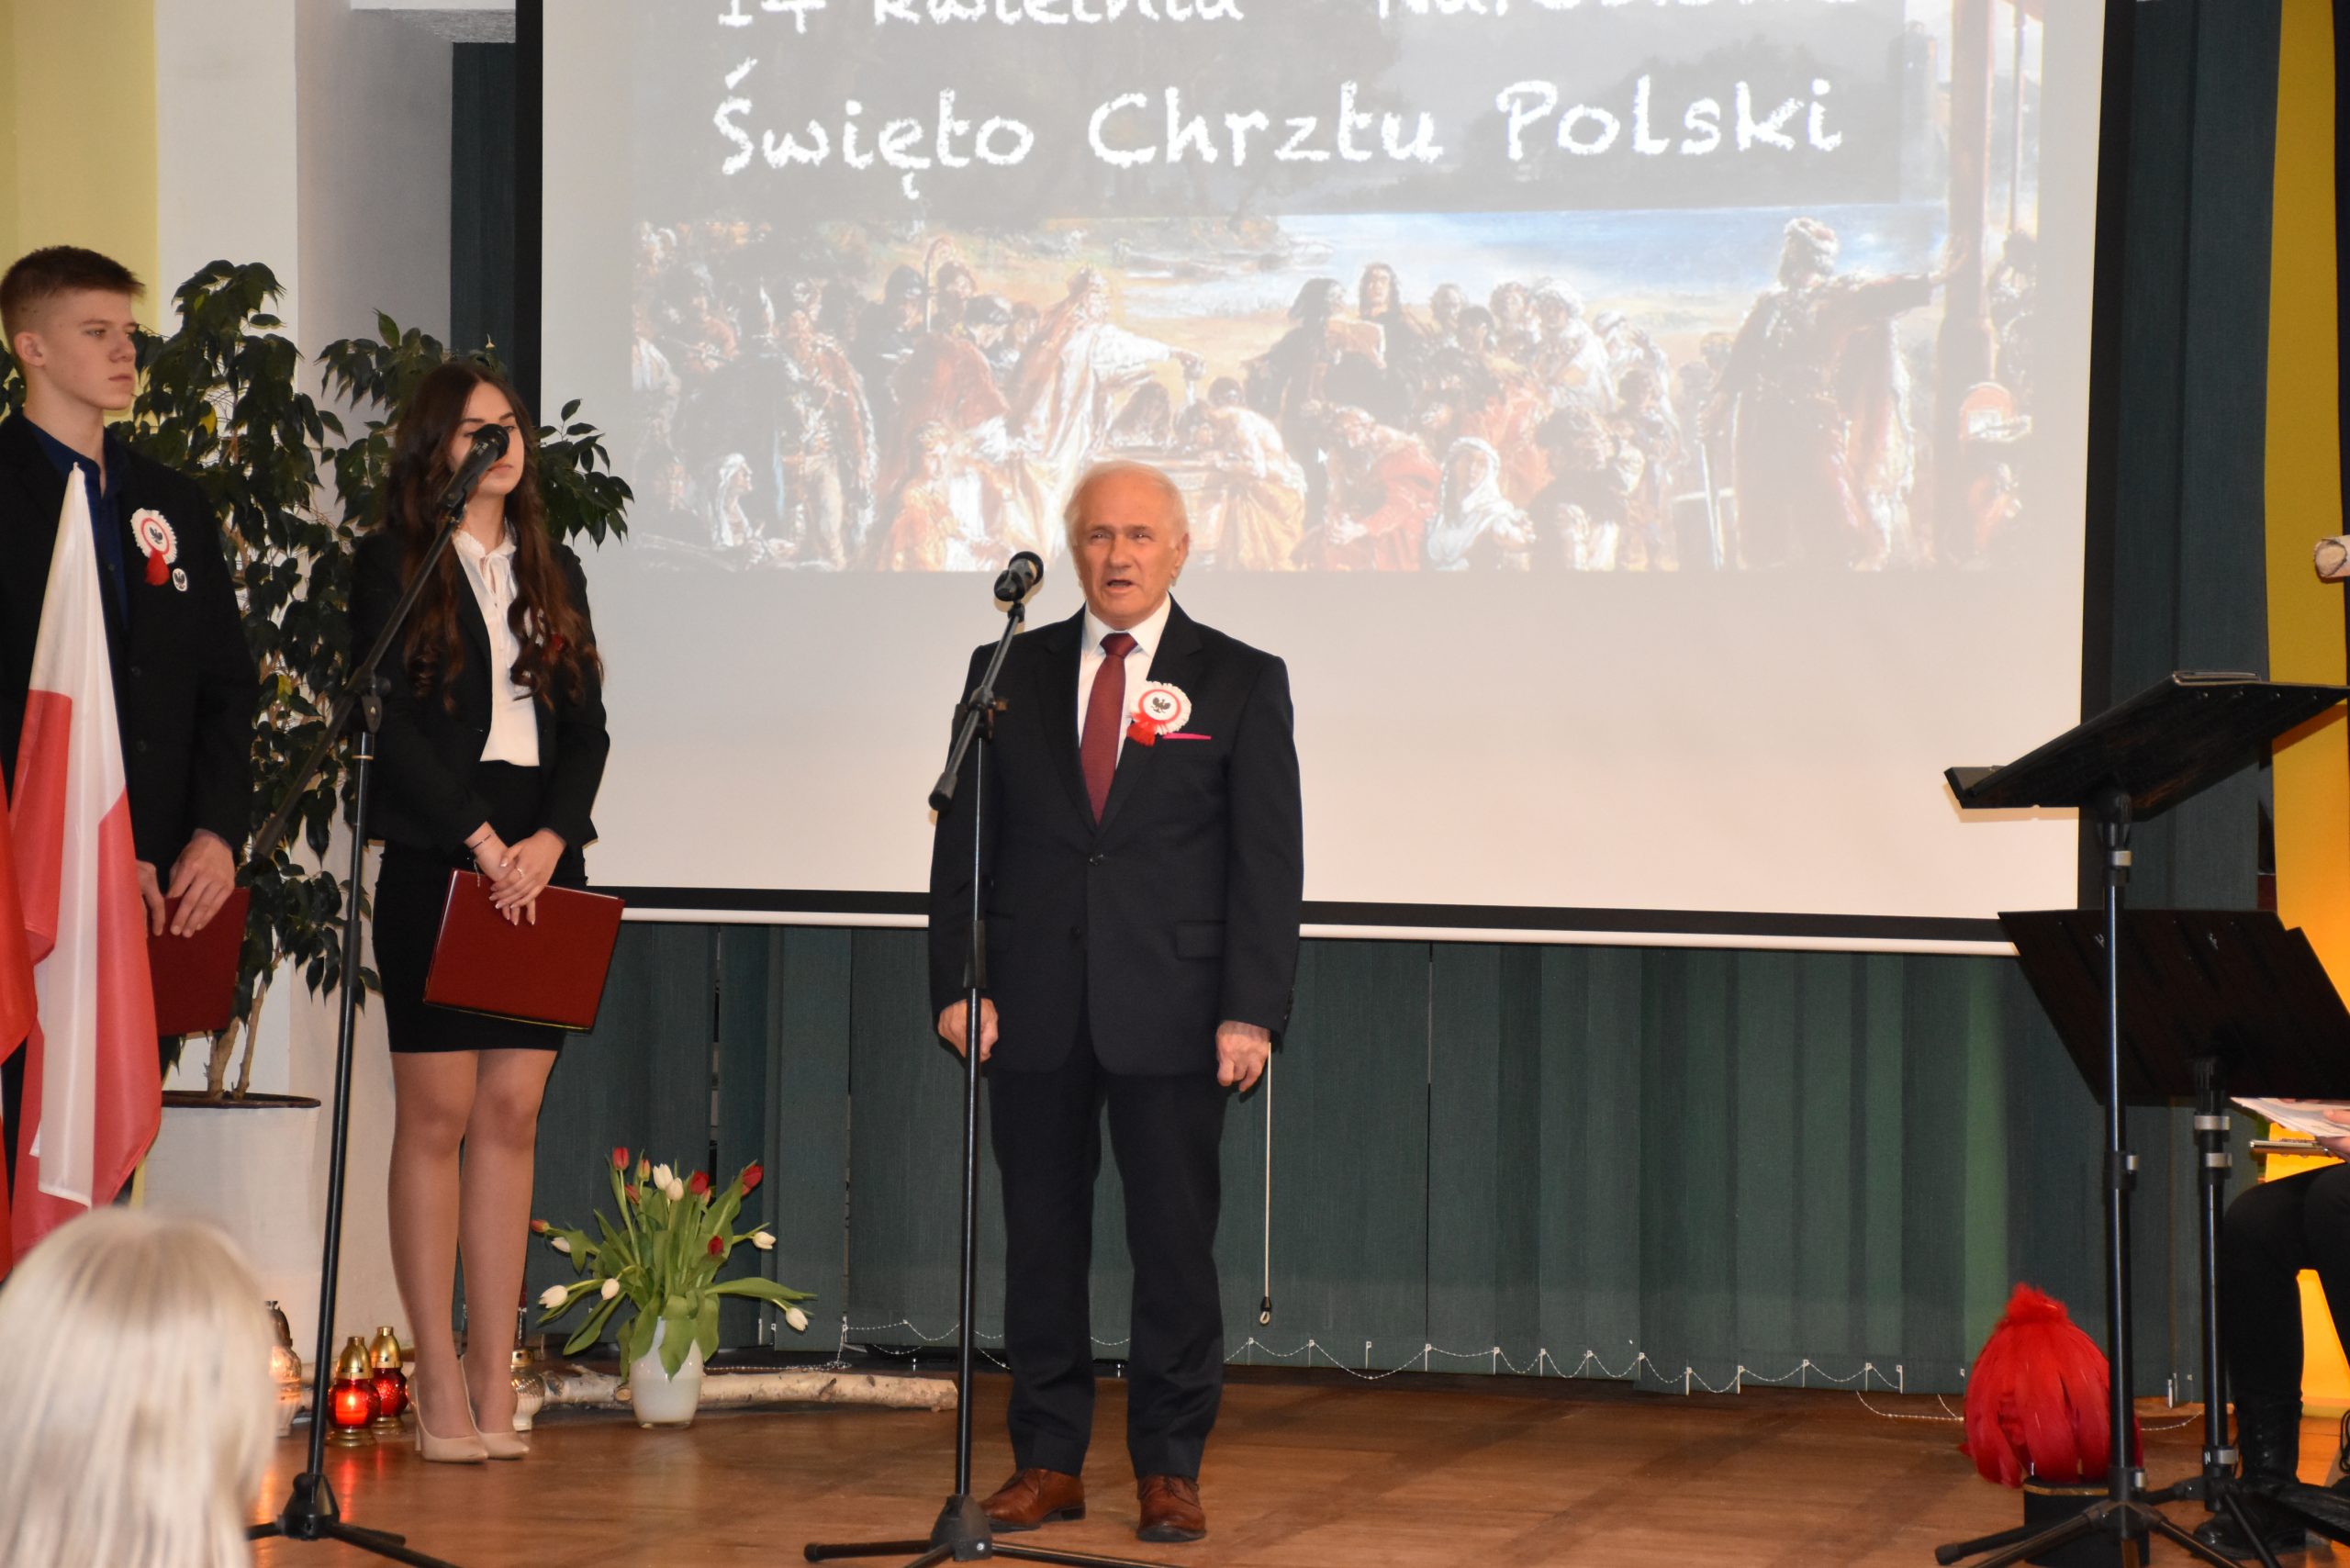 Narodowe Święto Chrztu Polski